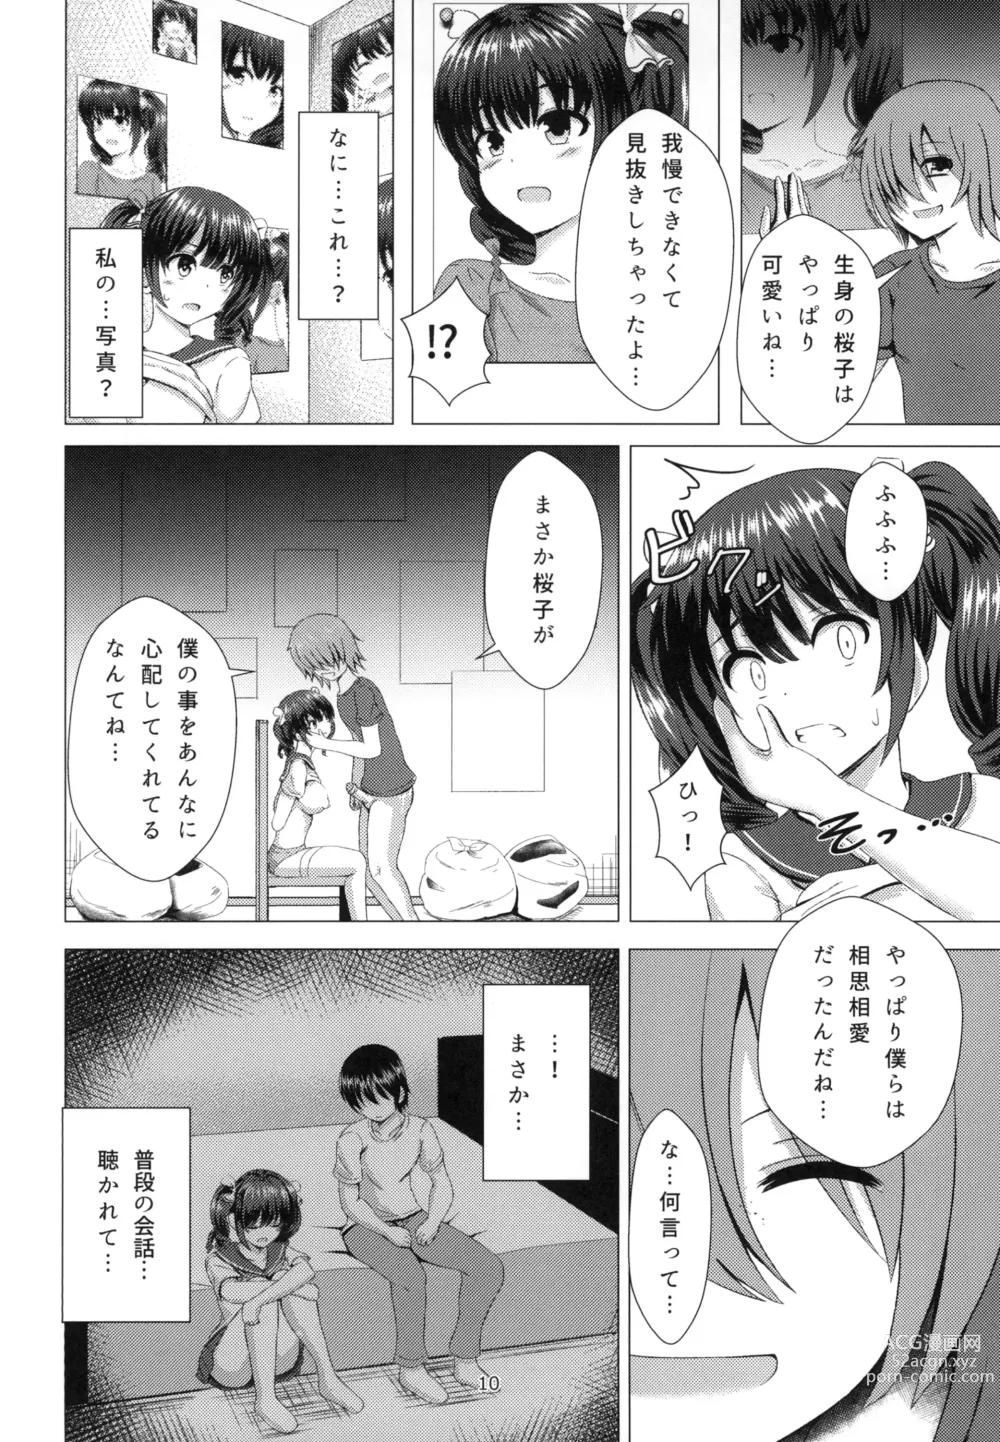 Page 10 of doujinshi Yuganda Koigokoro